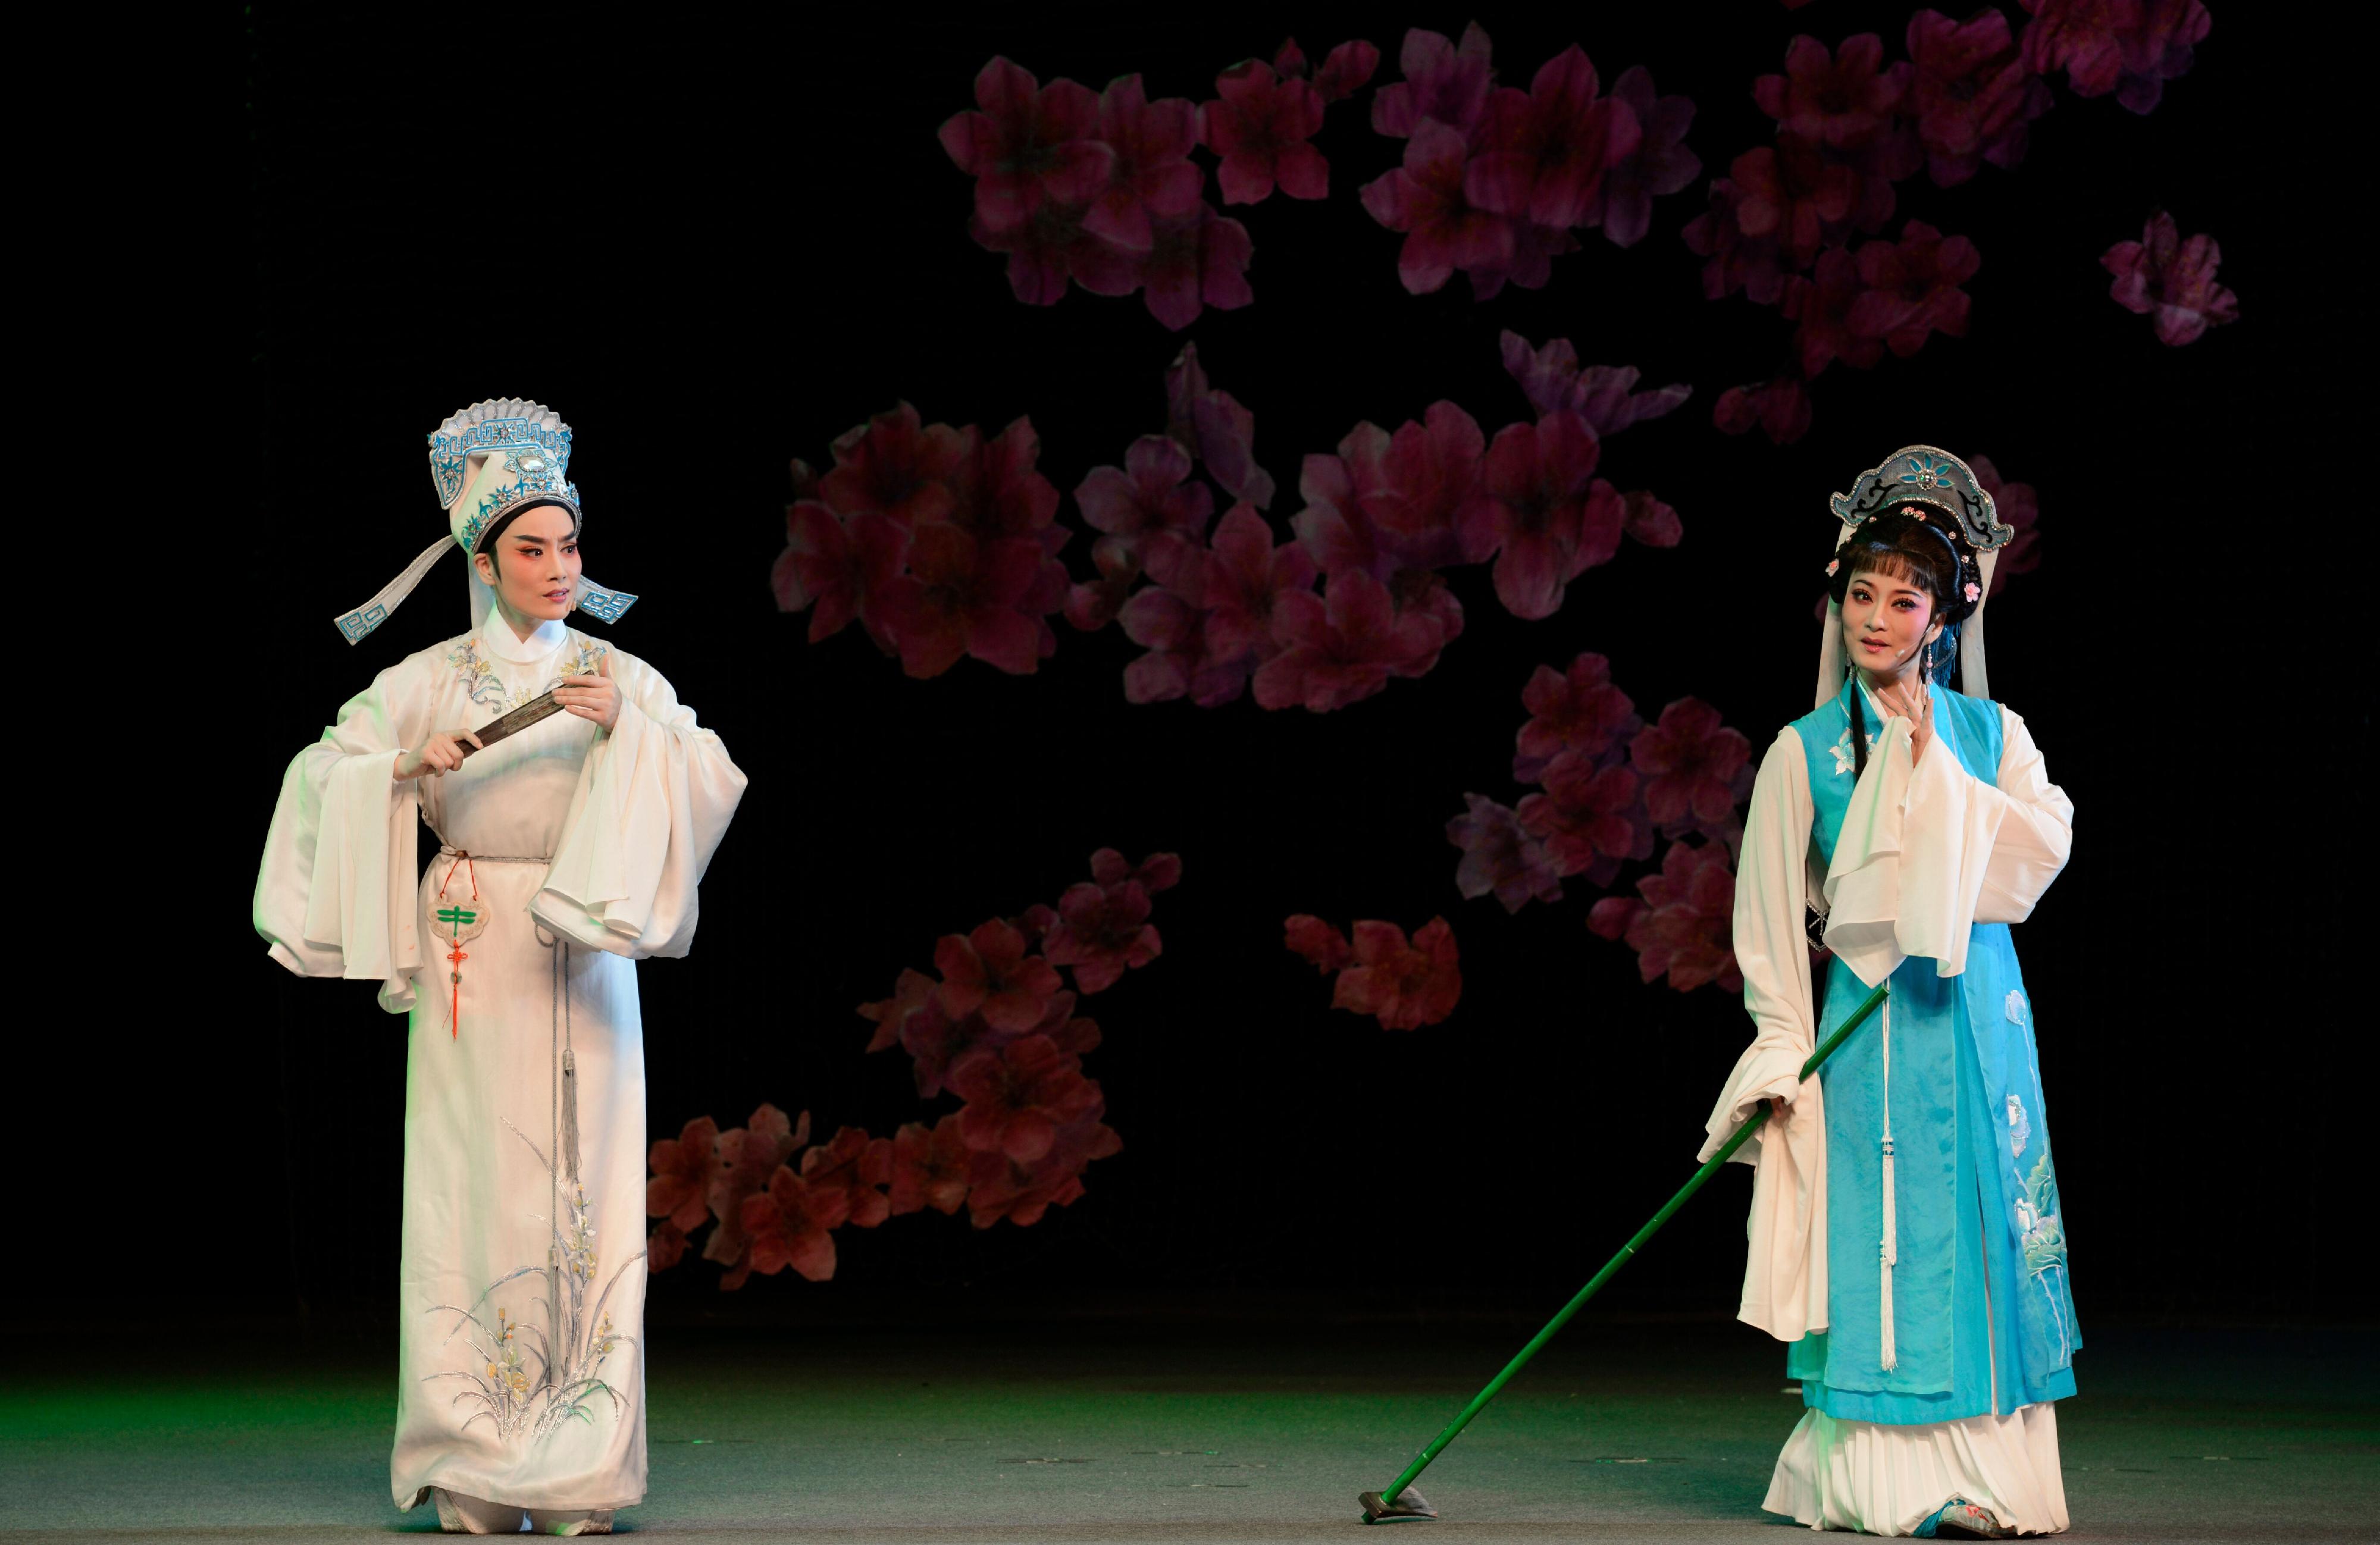 福建芳华越剧院于首届「中华文化节」上演三场越剧。图示《玉蜻蜓》剧照。

